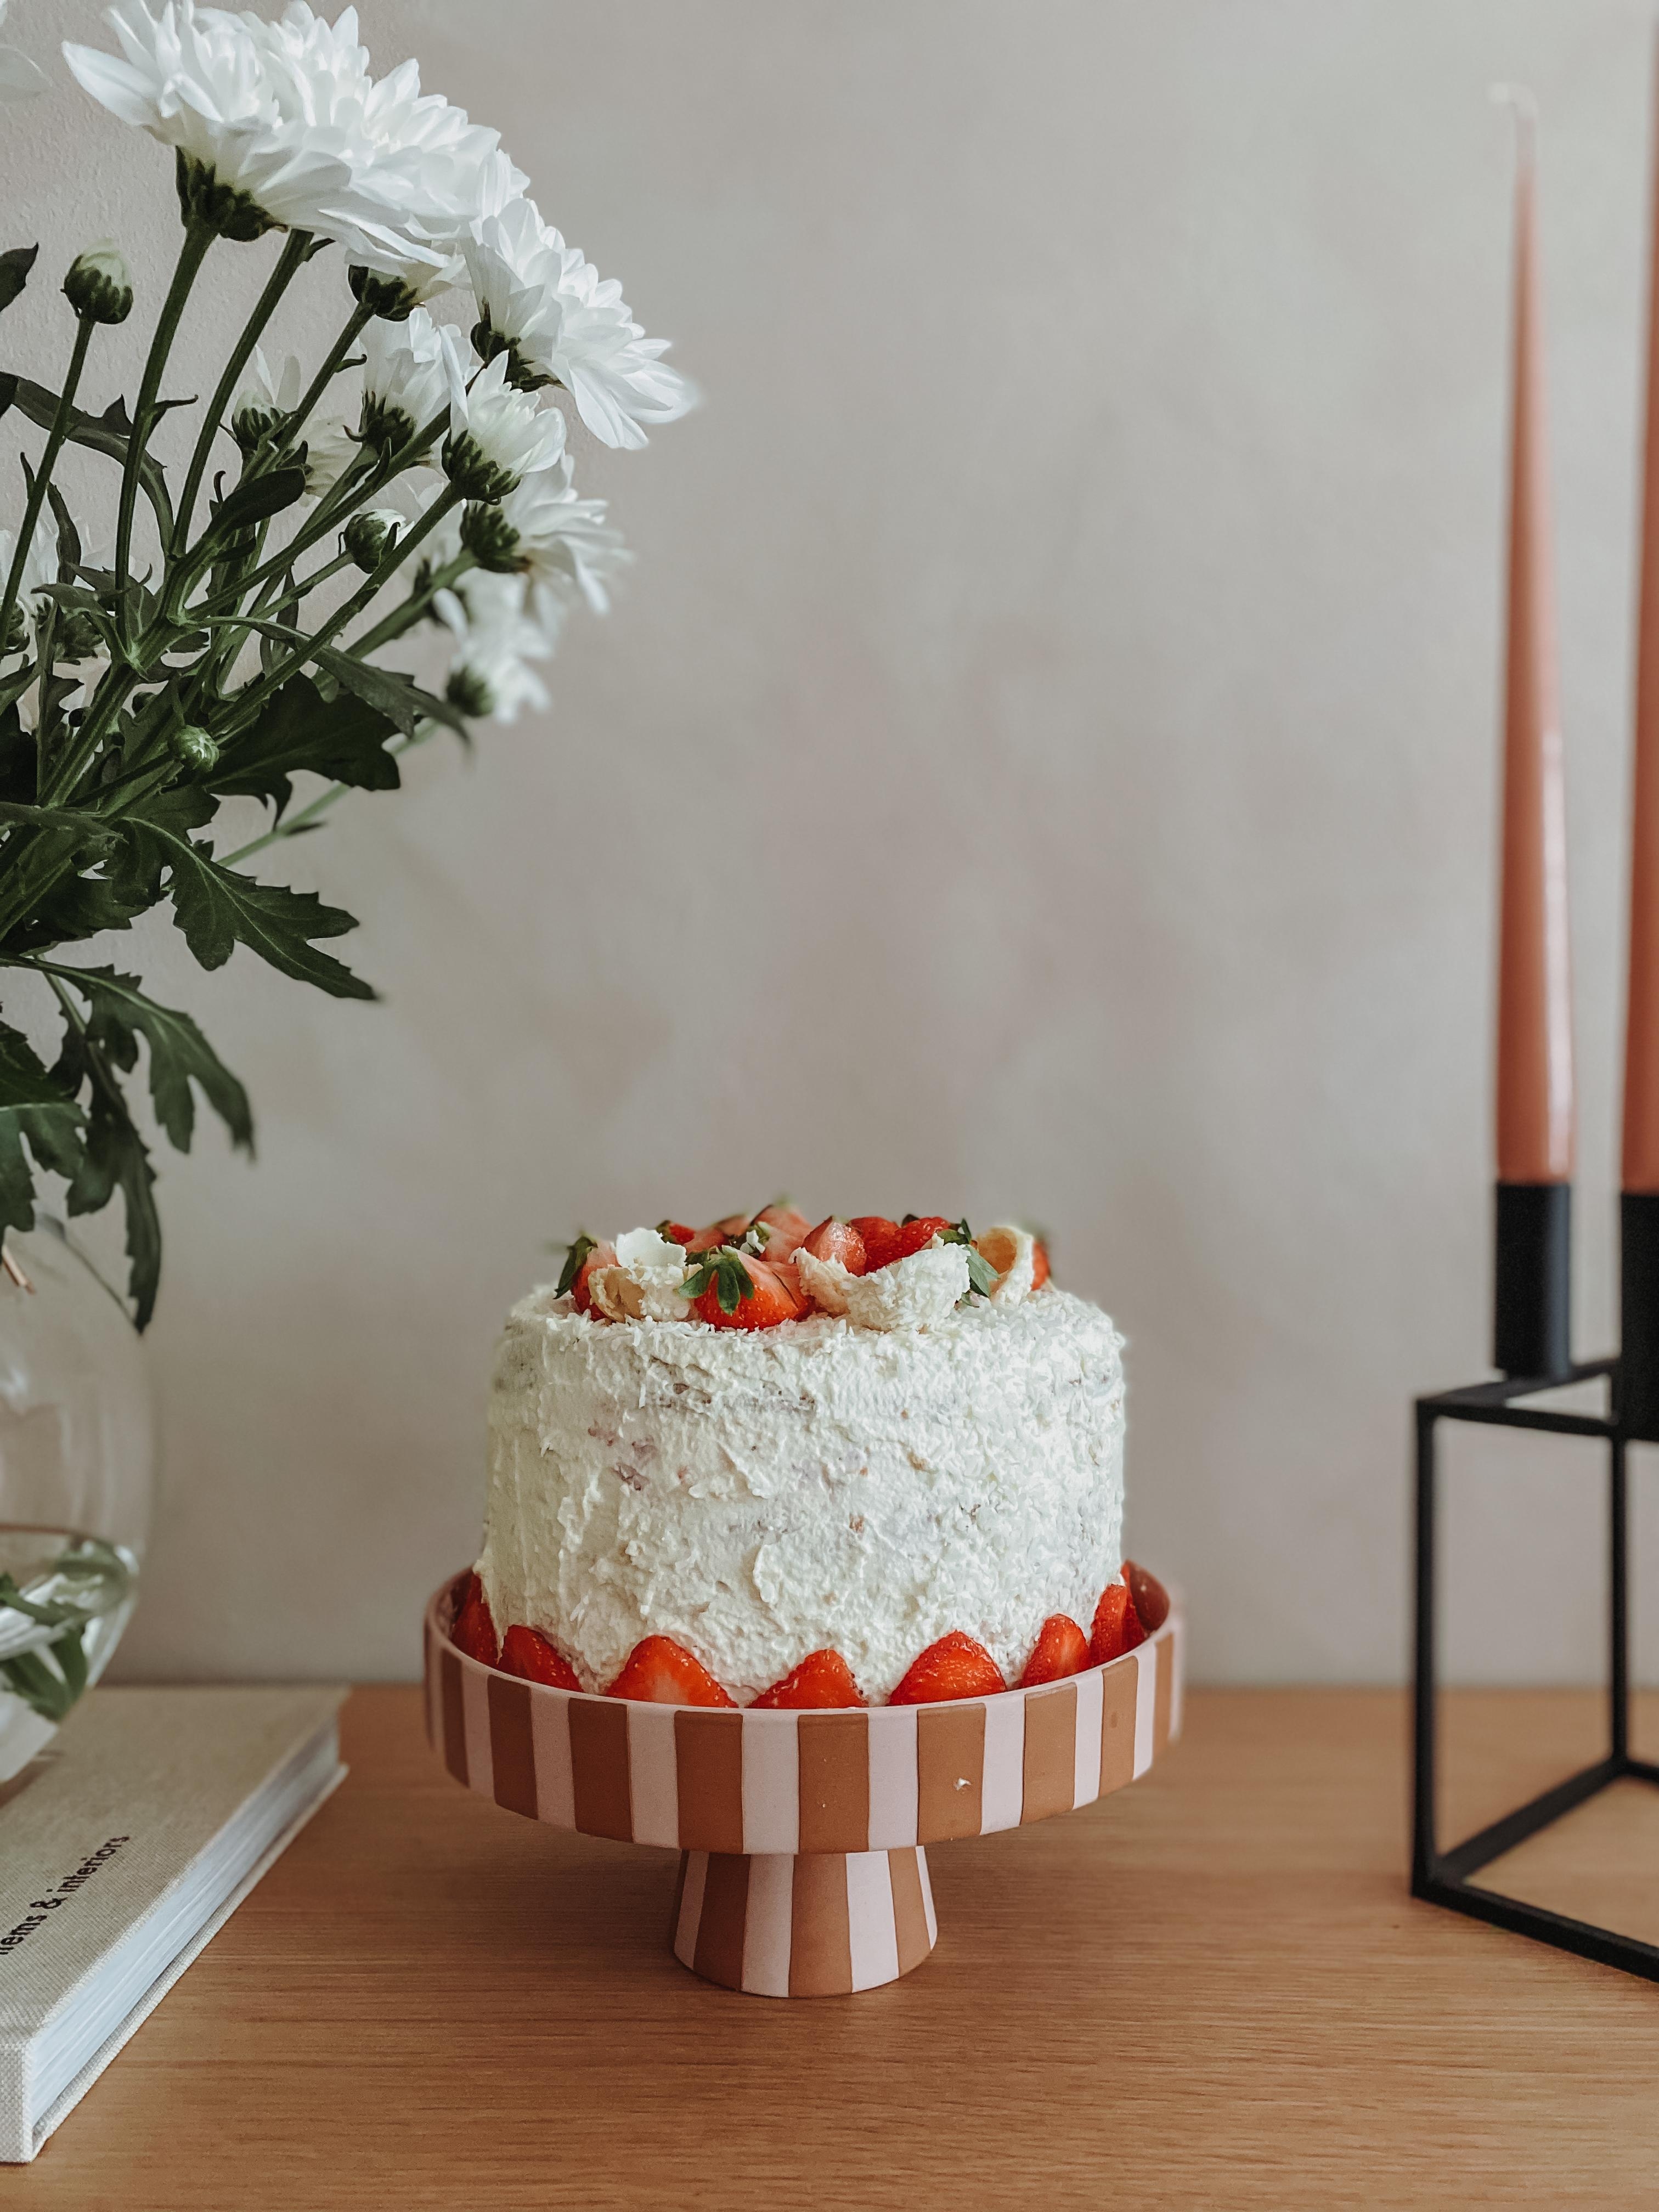 Eine Erdbeer-Raffaello-Torte & frische Blumen - was will man mehr? 🙃 #torte #erdbeertorte #freshflowers #kalklitir 